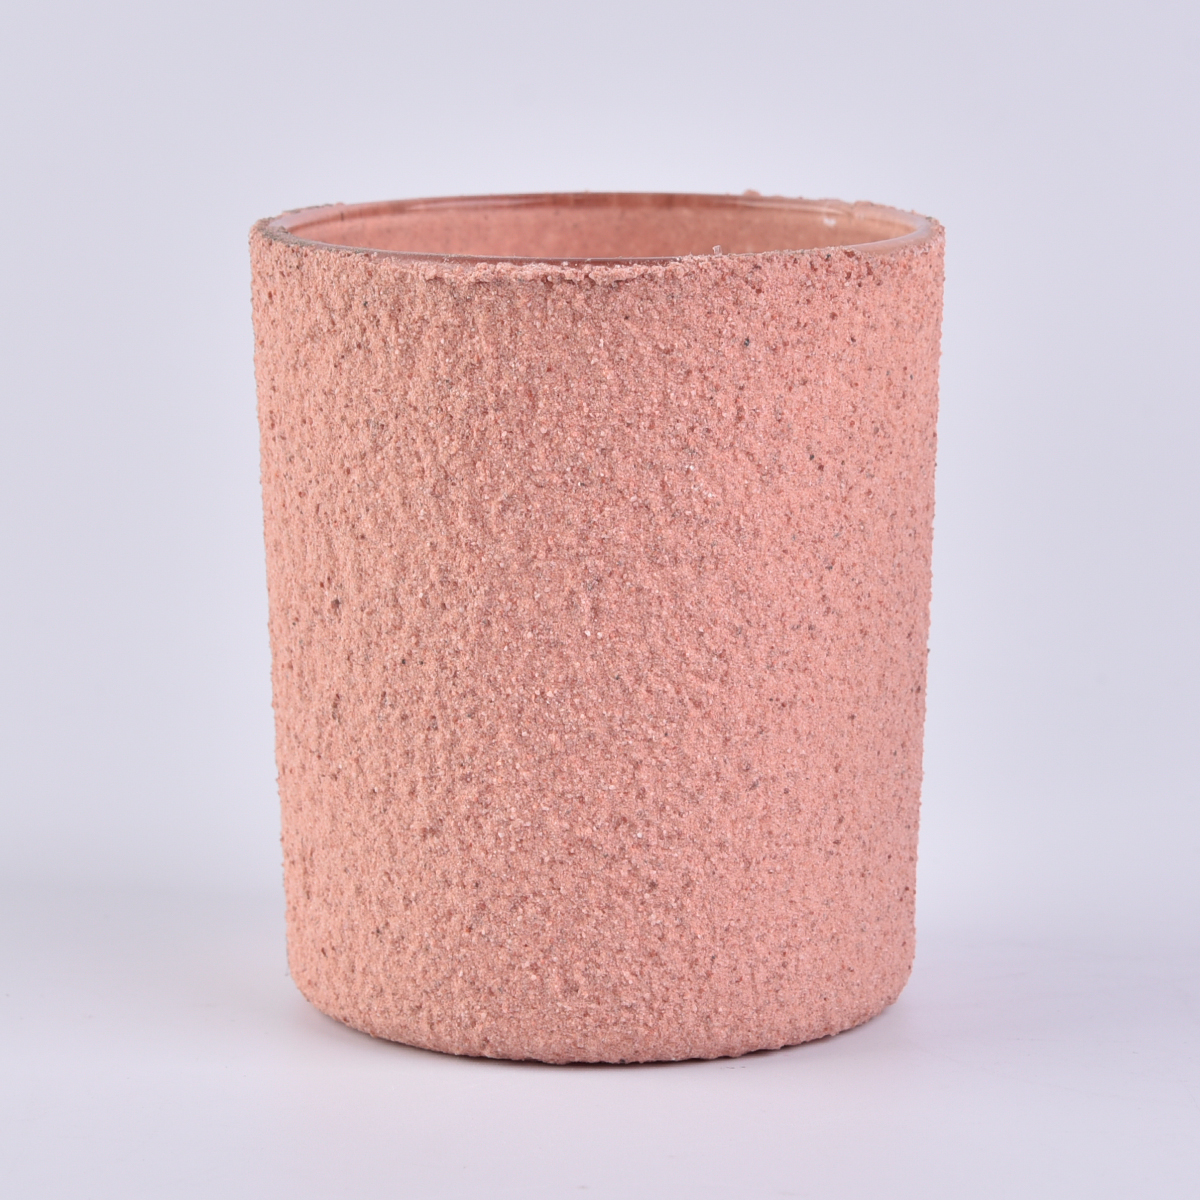 balang kaca merah jambu borong untuk membuat lilin dengan hiasan rumah